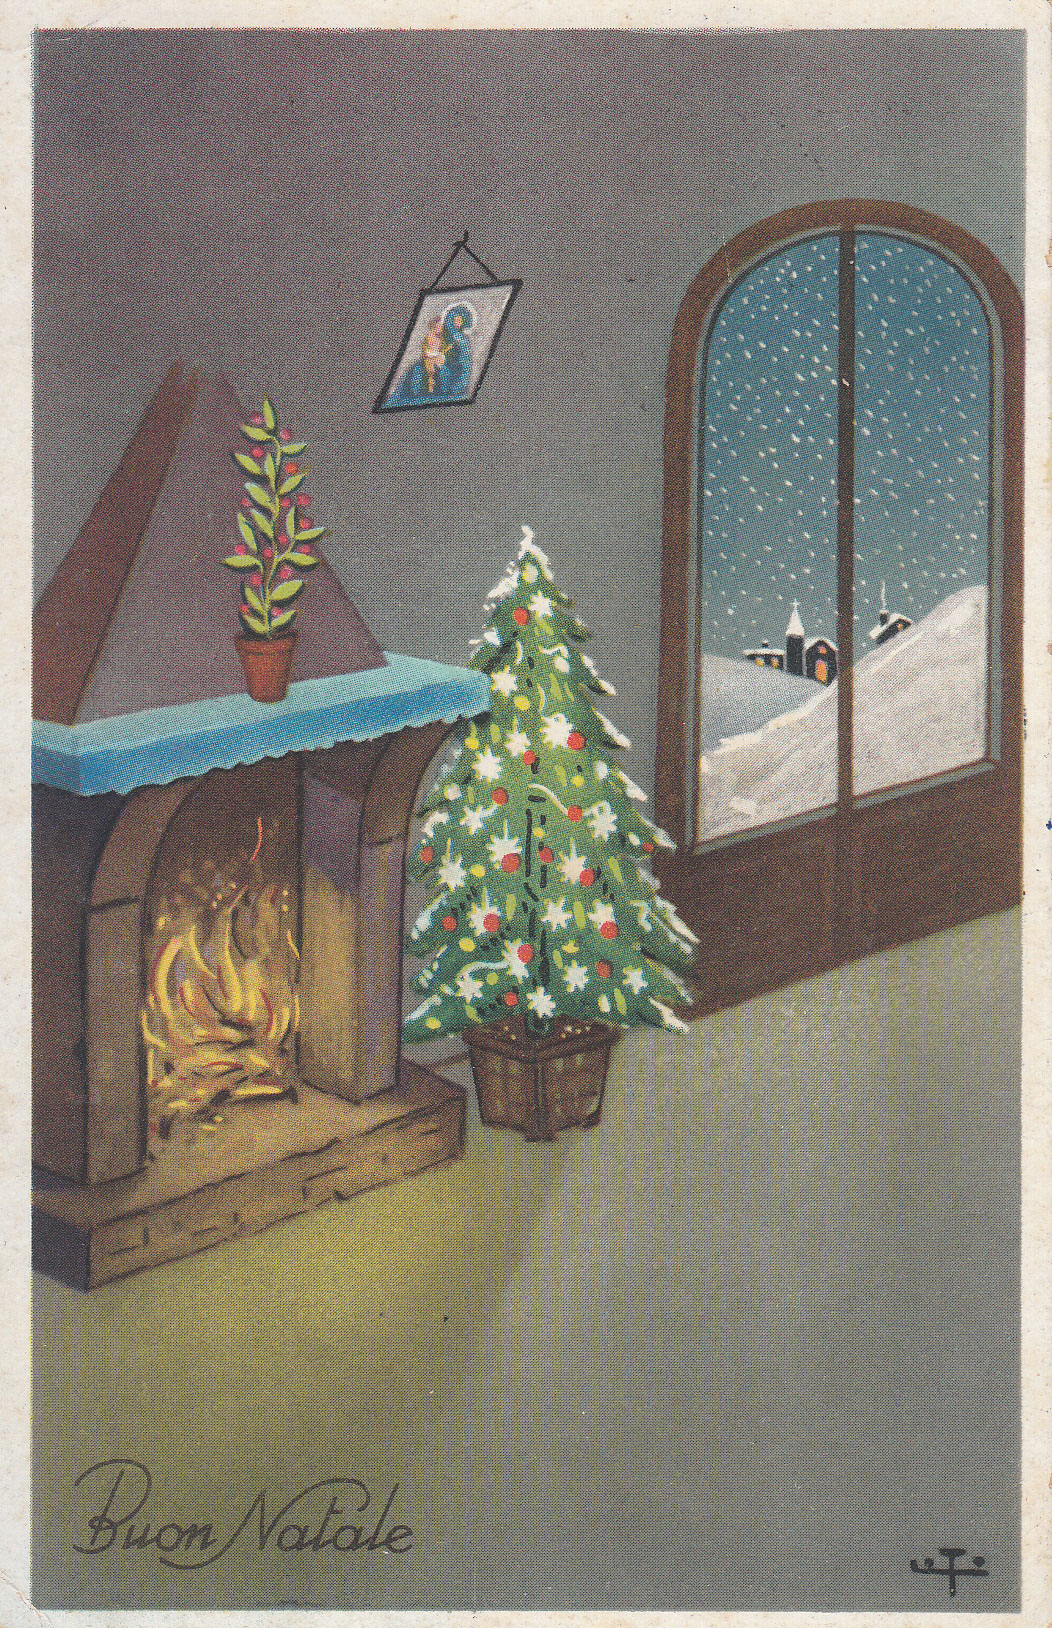 Cartoline Antiche Di Buon Natale.Vecchie Cartoline E Letterine Natalizie Al Barnardon